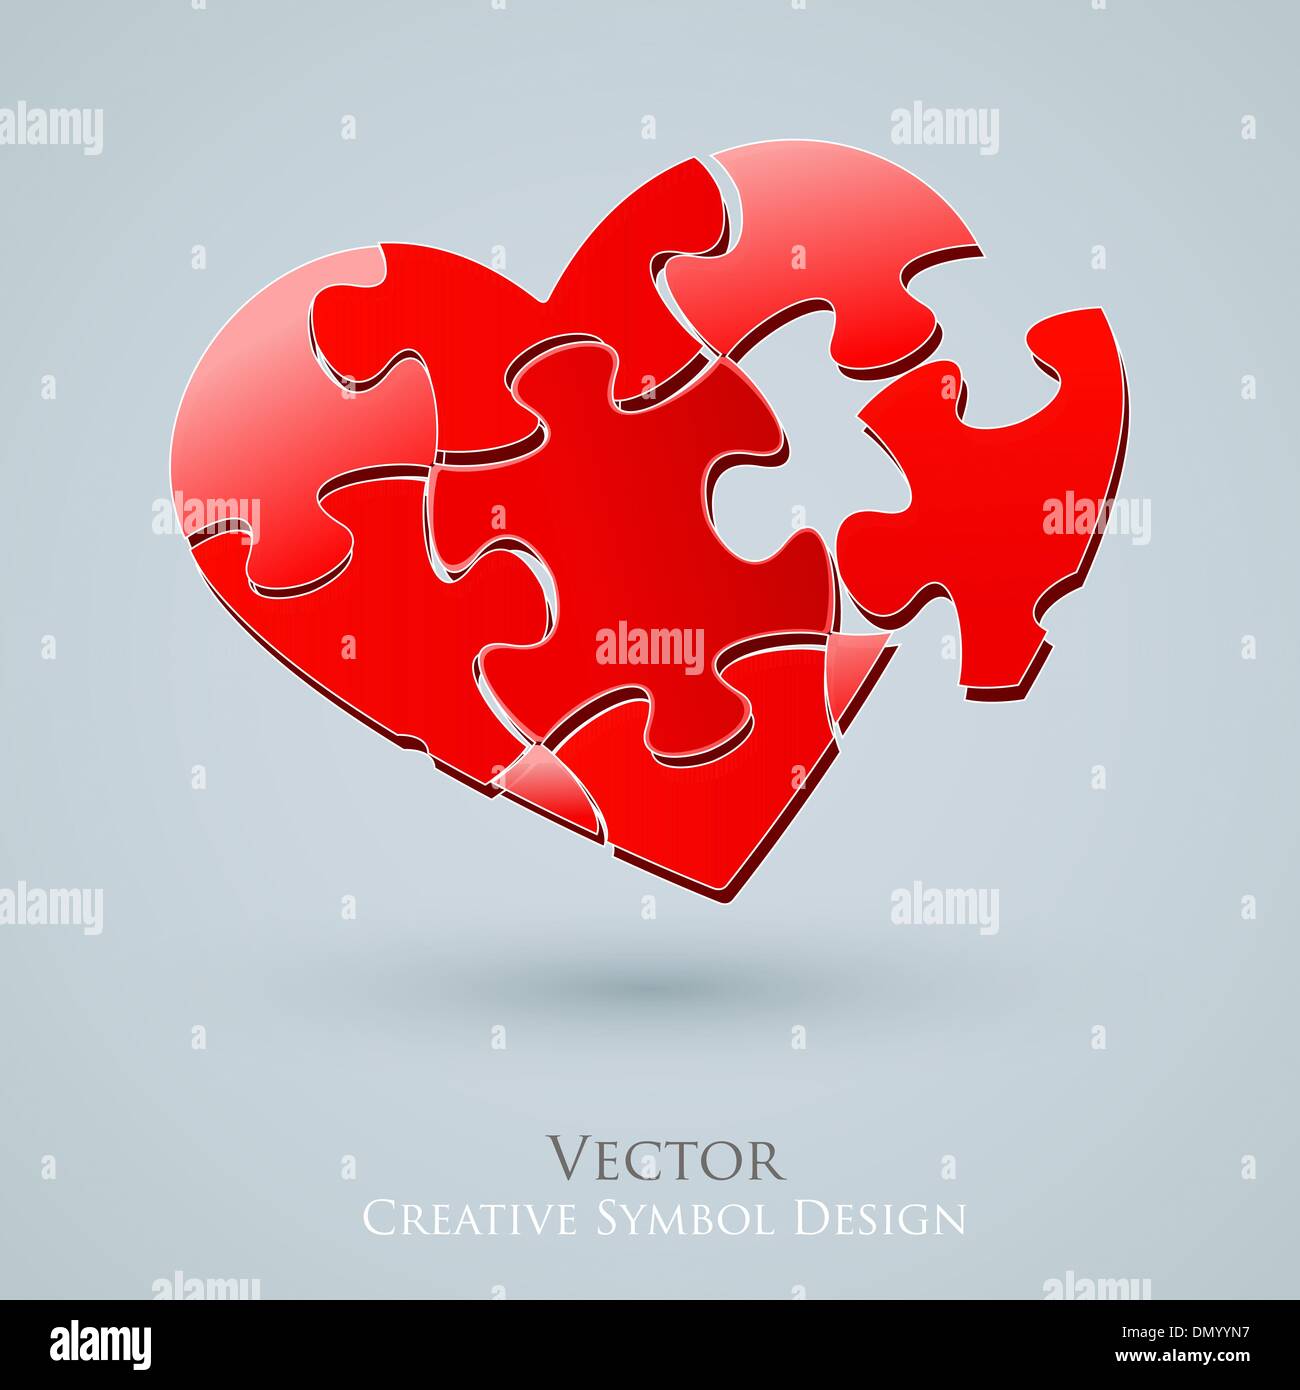 Konzeptionelle Herz-Vektor-Design. Kreative Idee der romantischen Relati Stock Vektor